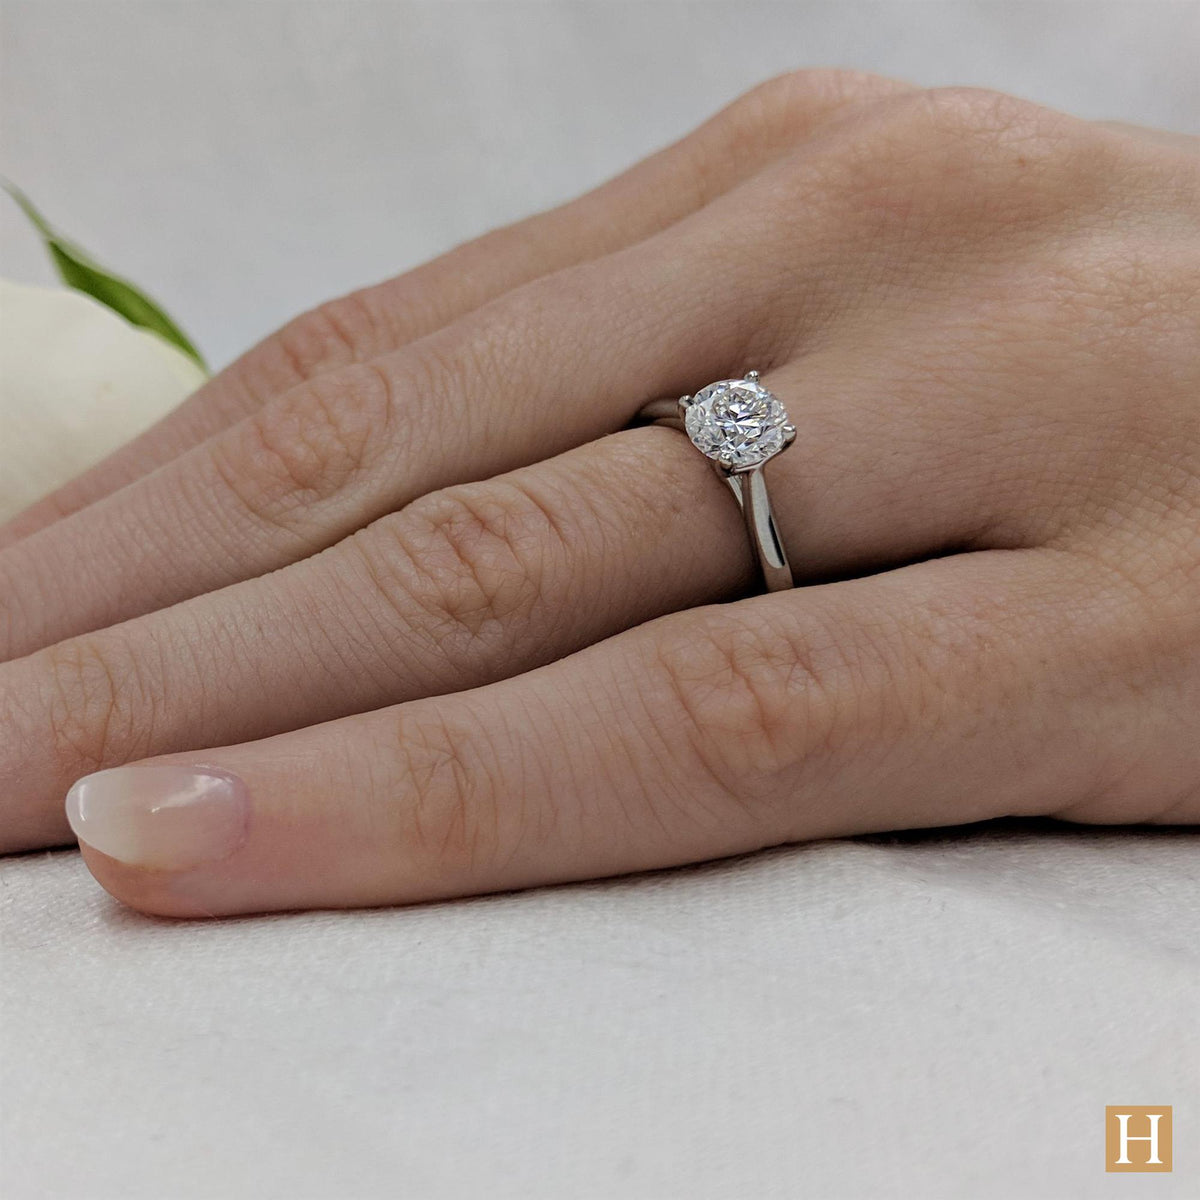 Platinum Open Tulip Engagement Ring